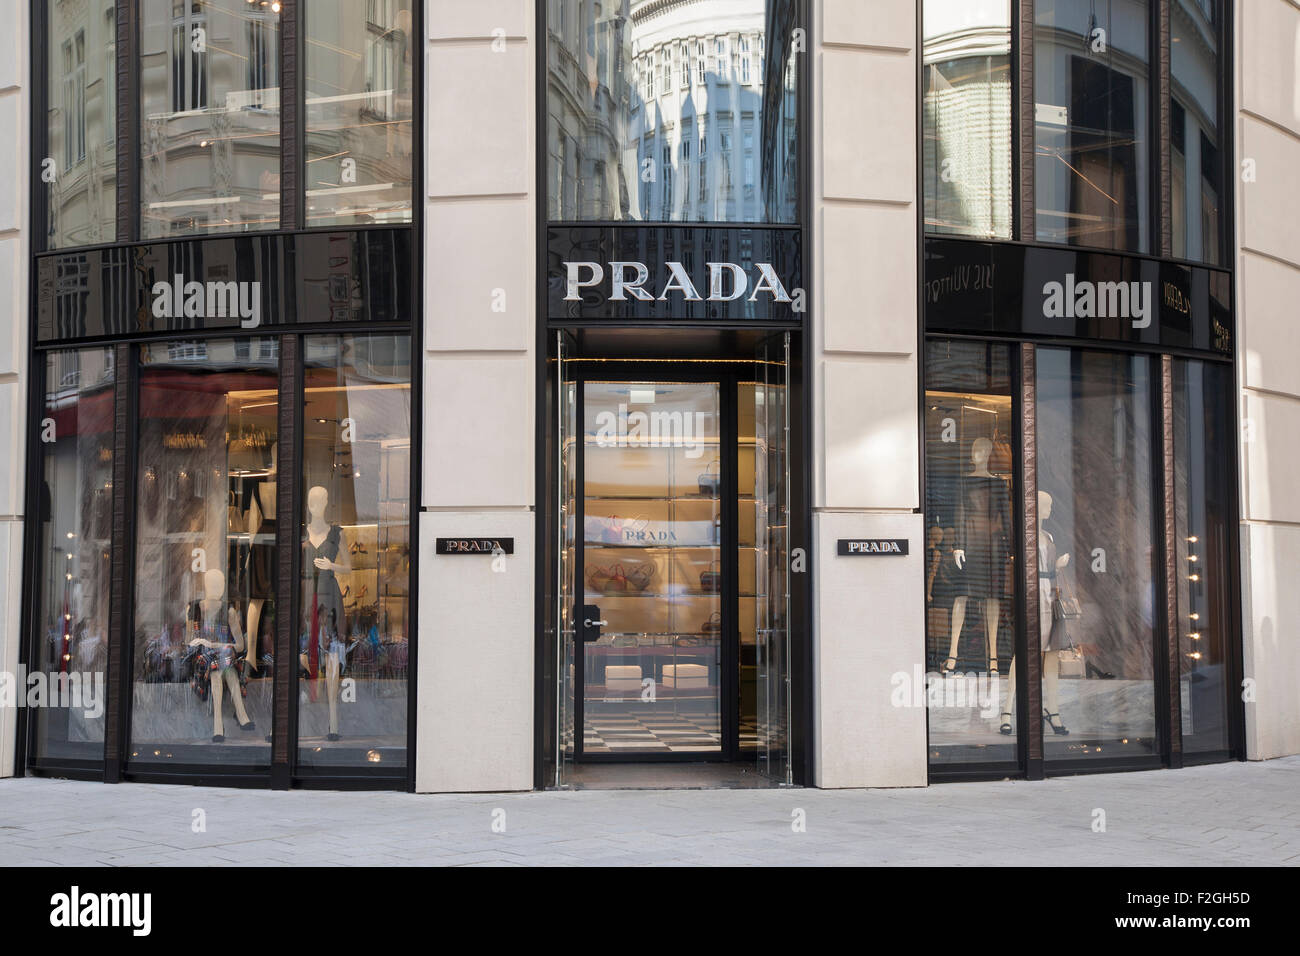 Prada-Geschäft, Weihburggasse Straße; Wien, Österreich Stockfotografie -  Alamy